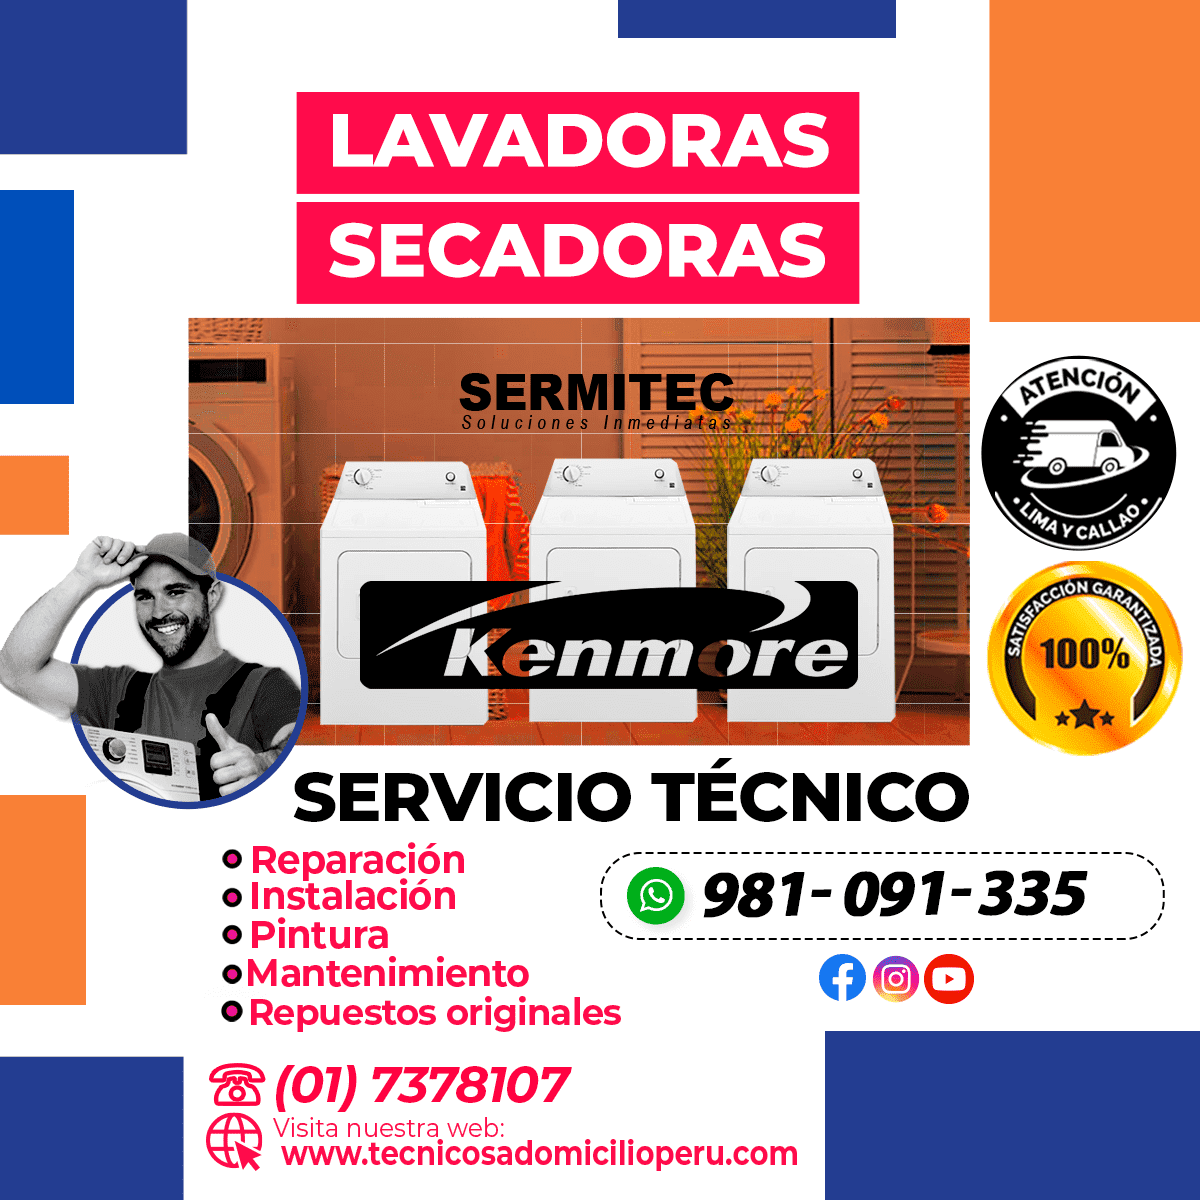 Kenmore Reparación de Lavadoras 981091335 CHOSICA